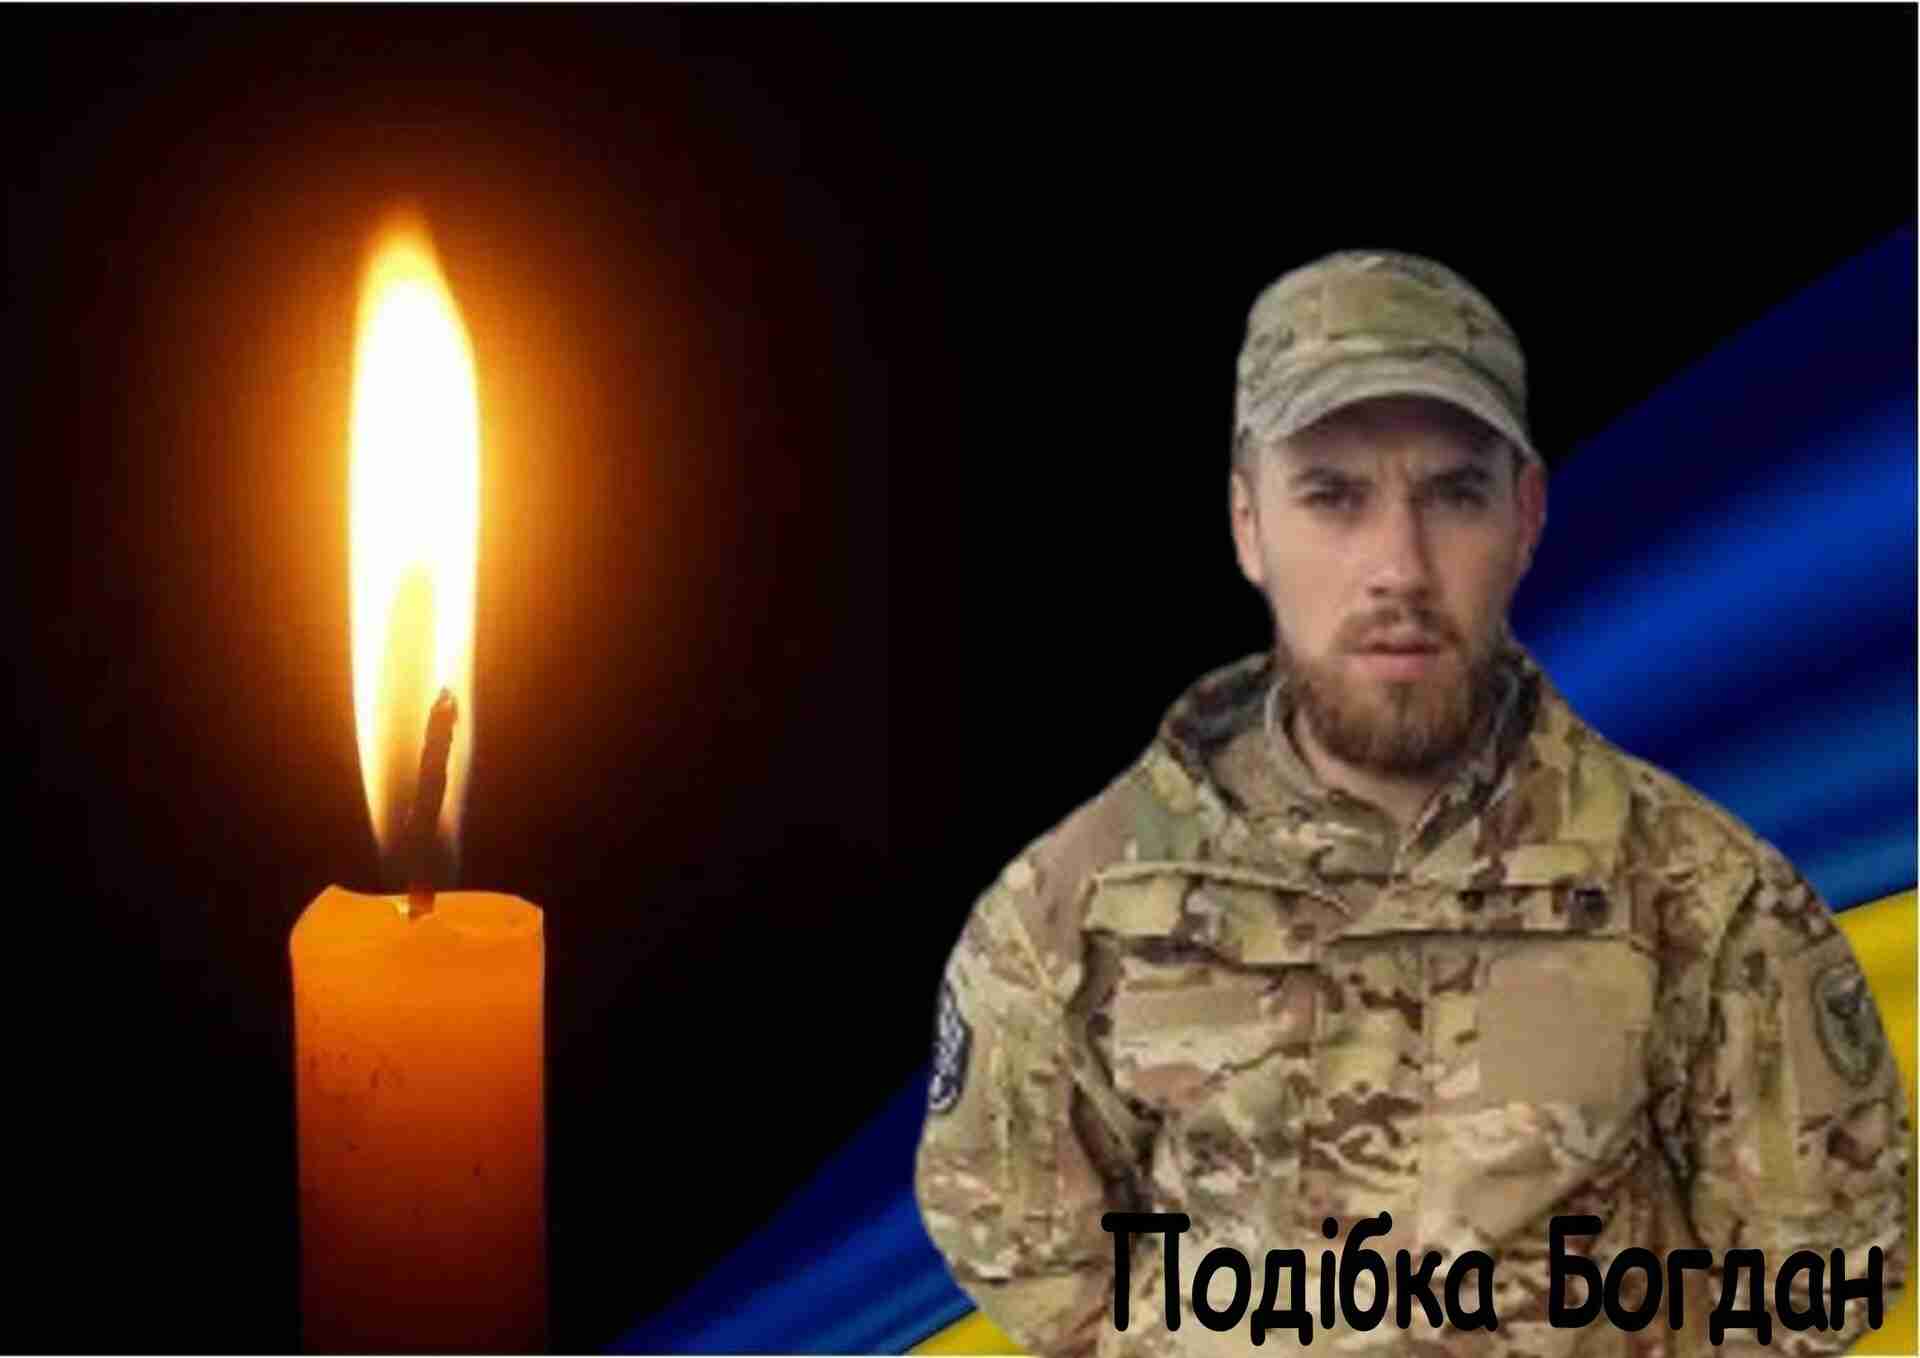 Львівщина прощається з загиблим на війні Героєм Подібкою Богданом